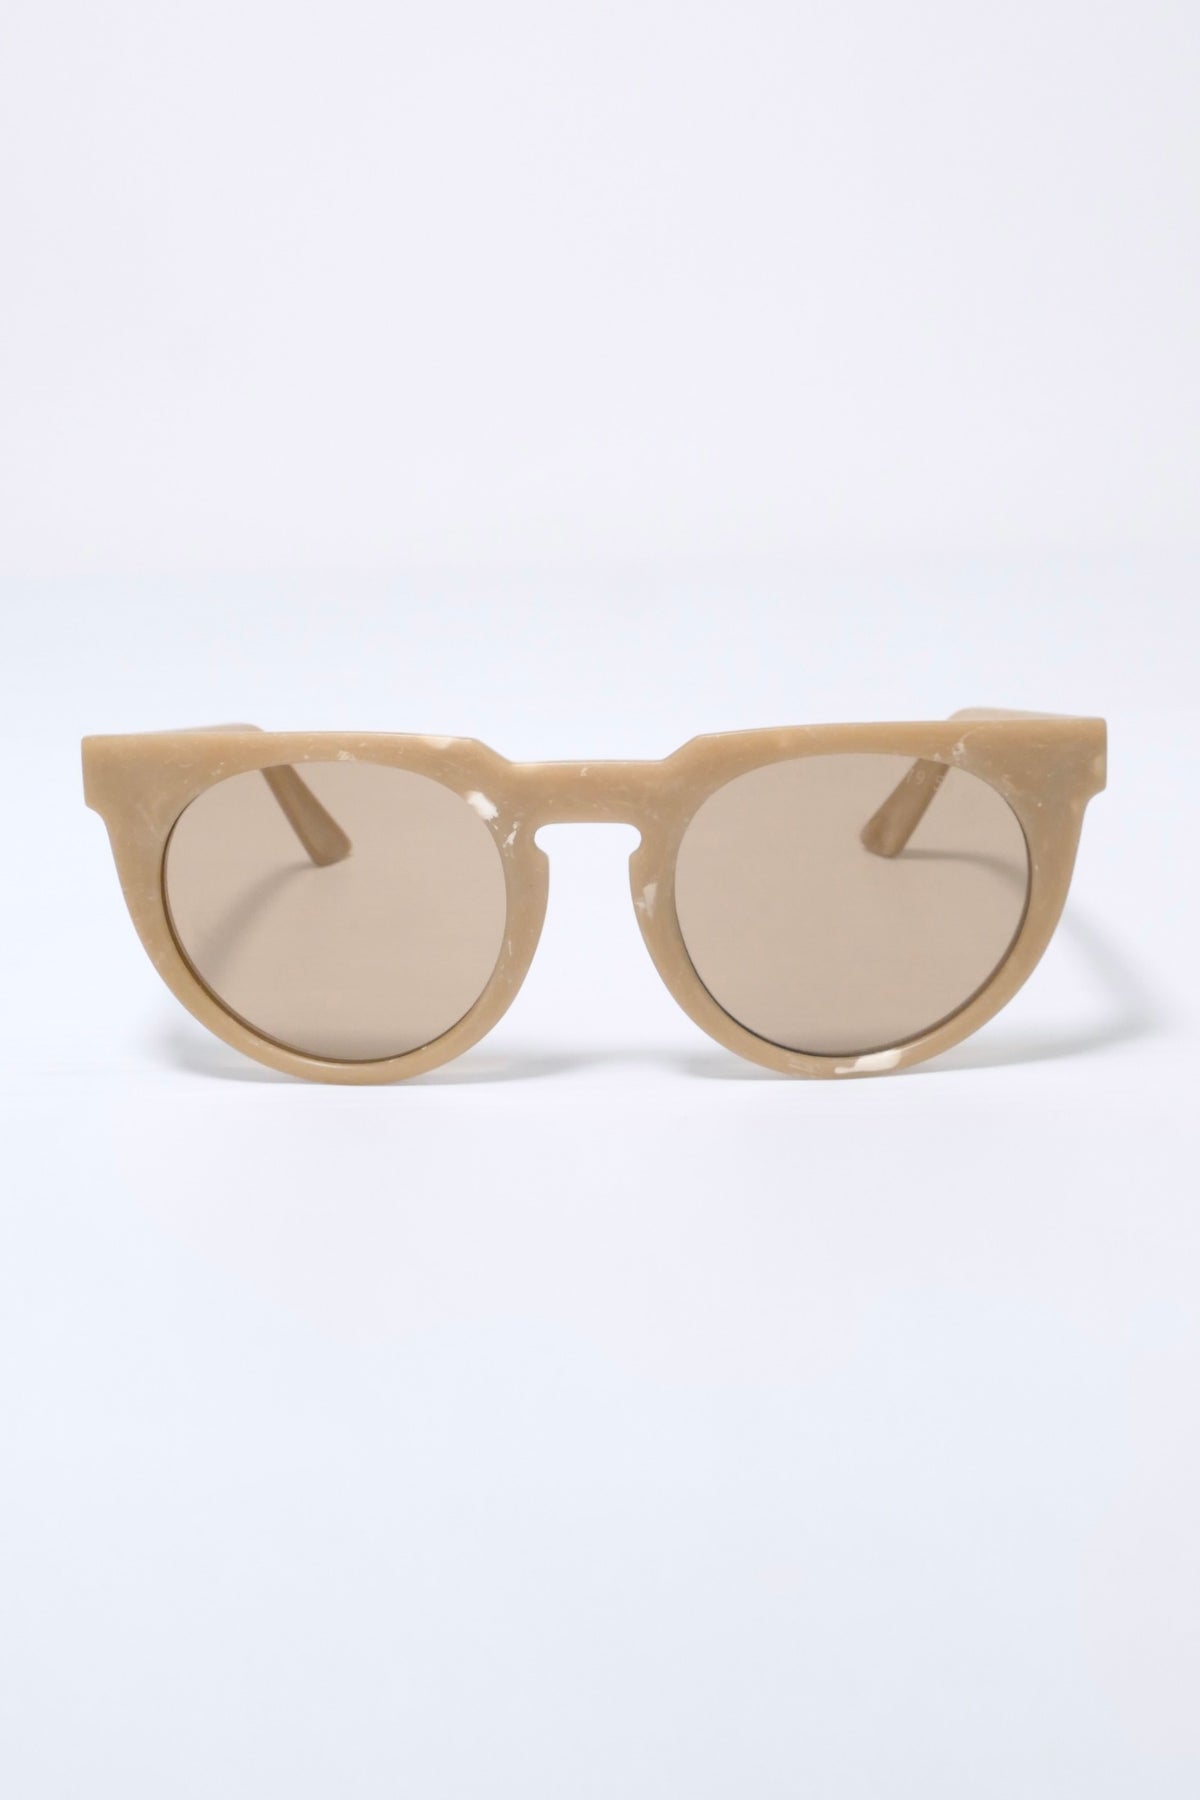 Clean Waves Type 05 Sunglasses - Beige/brown